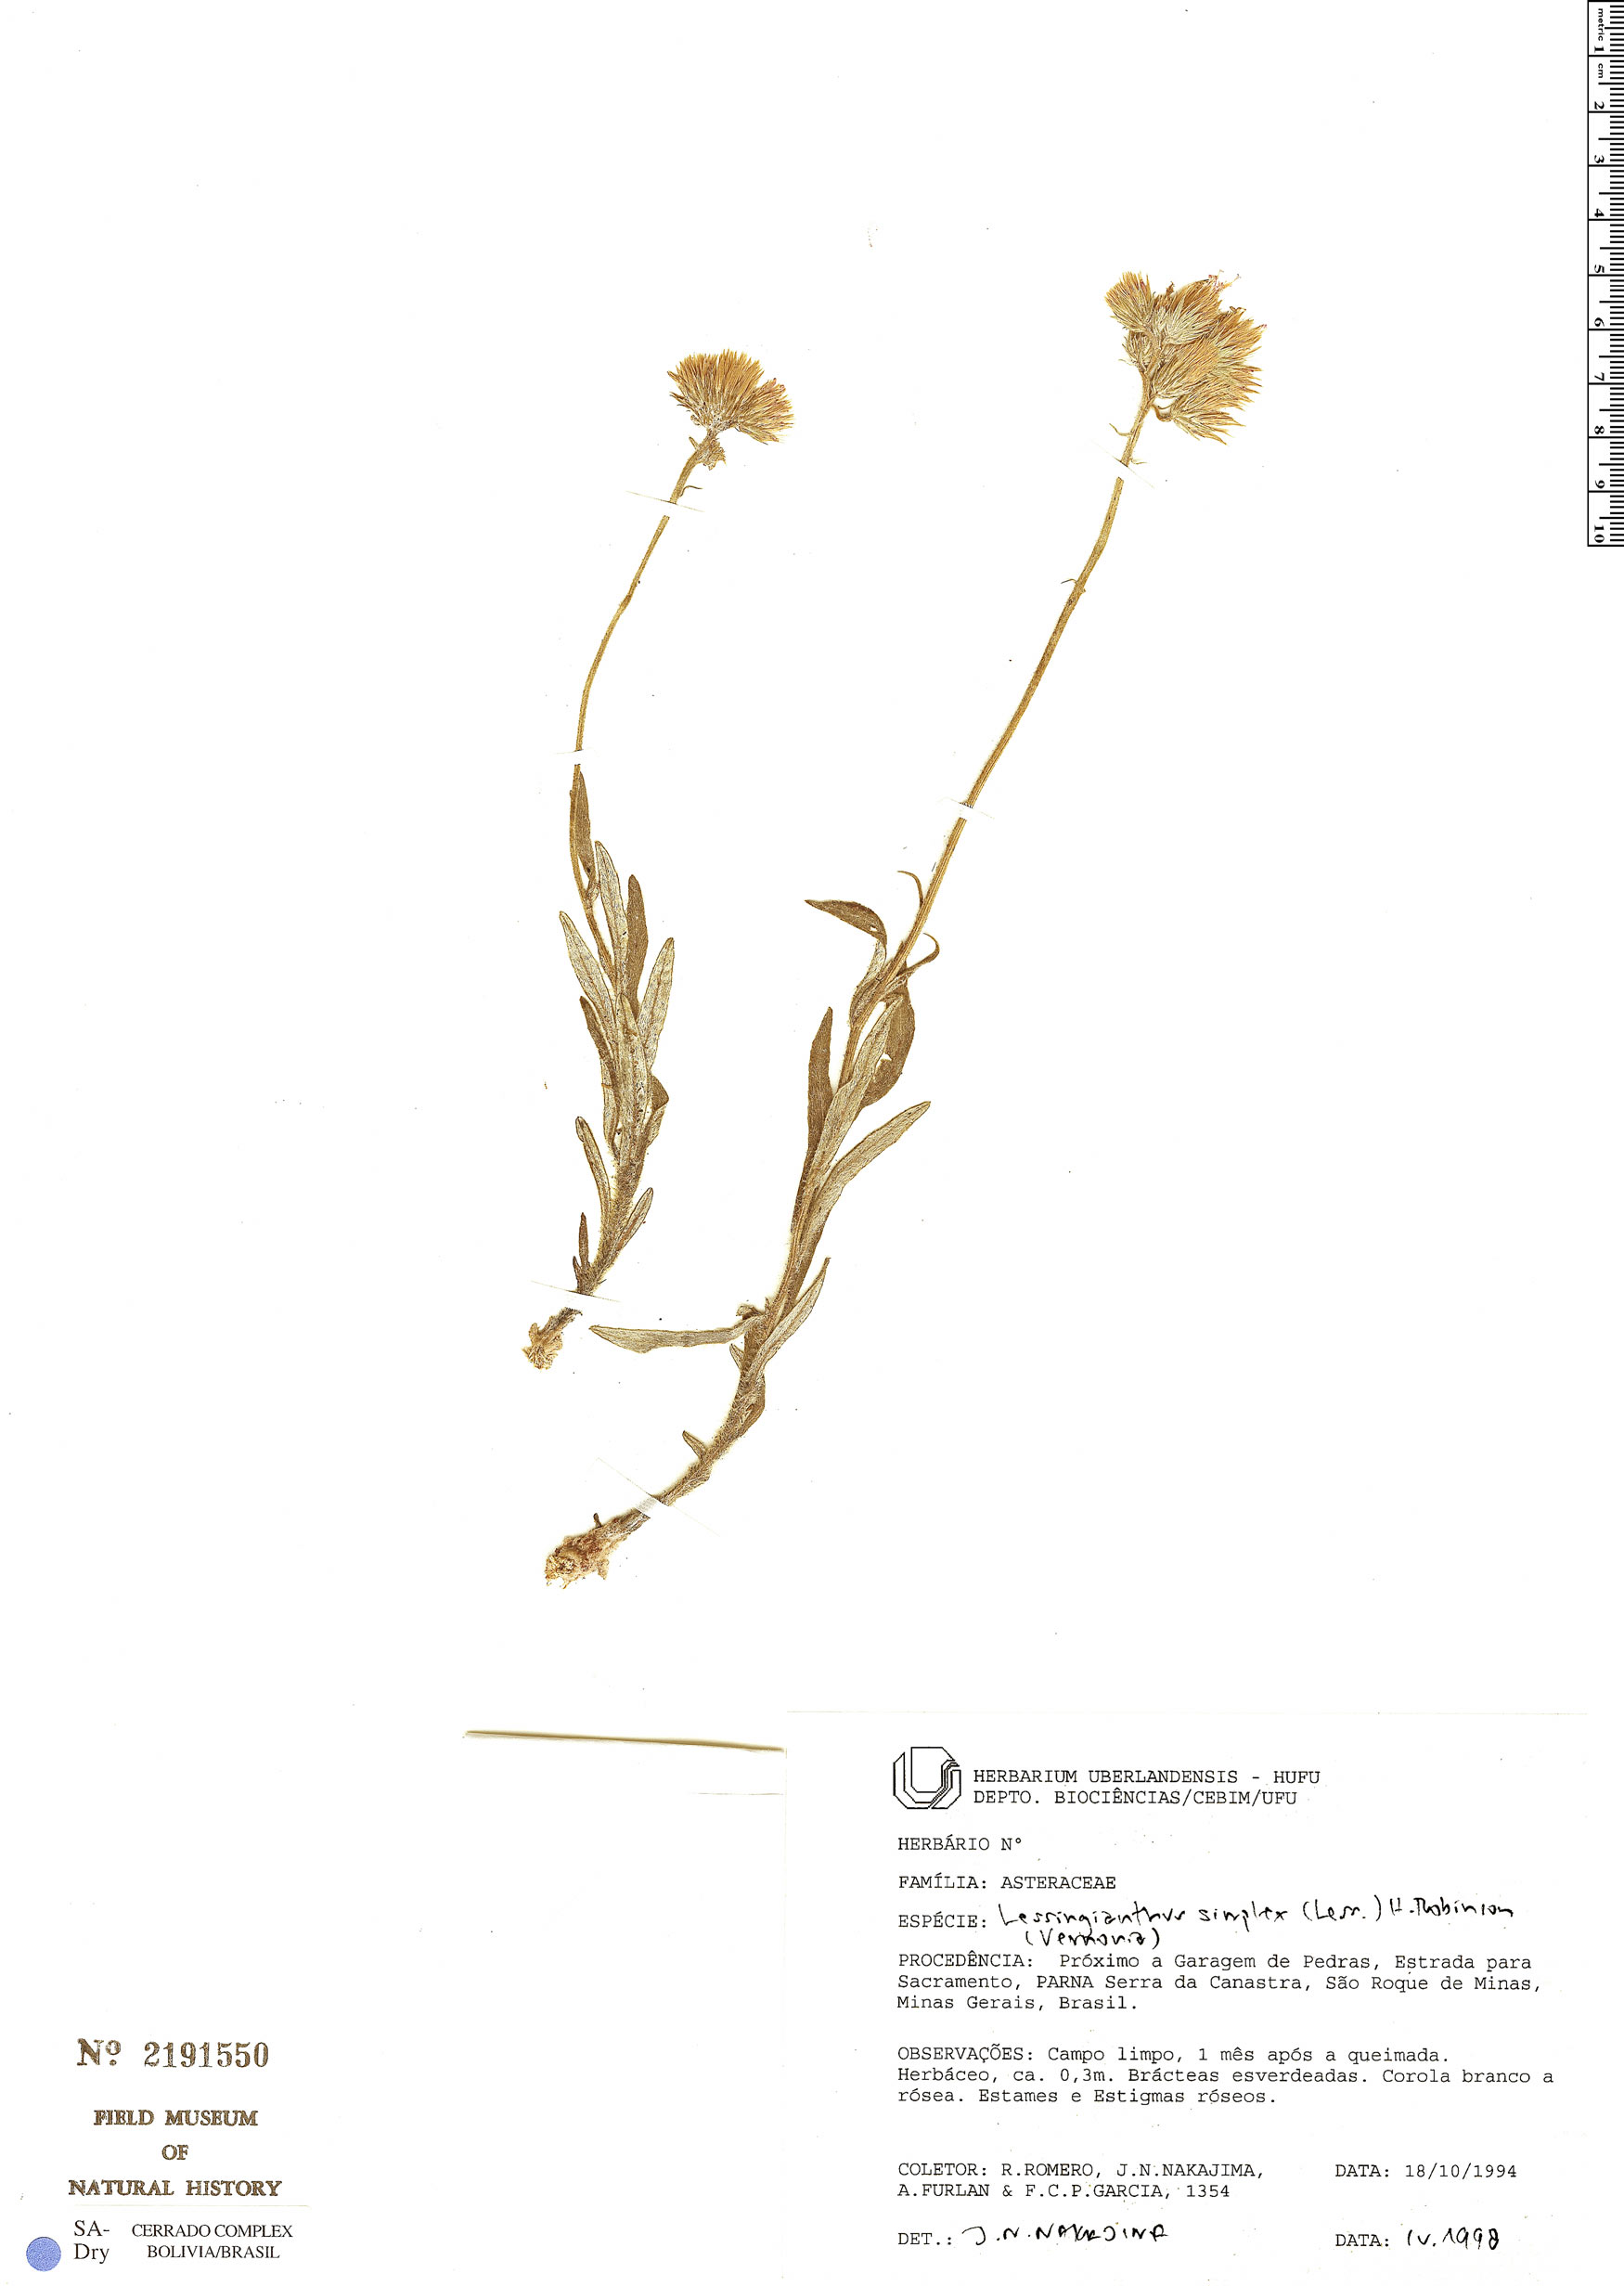 Lessingianthus simplex image